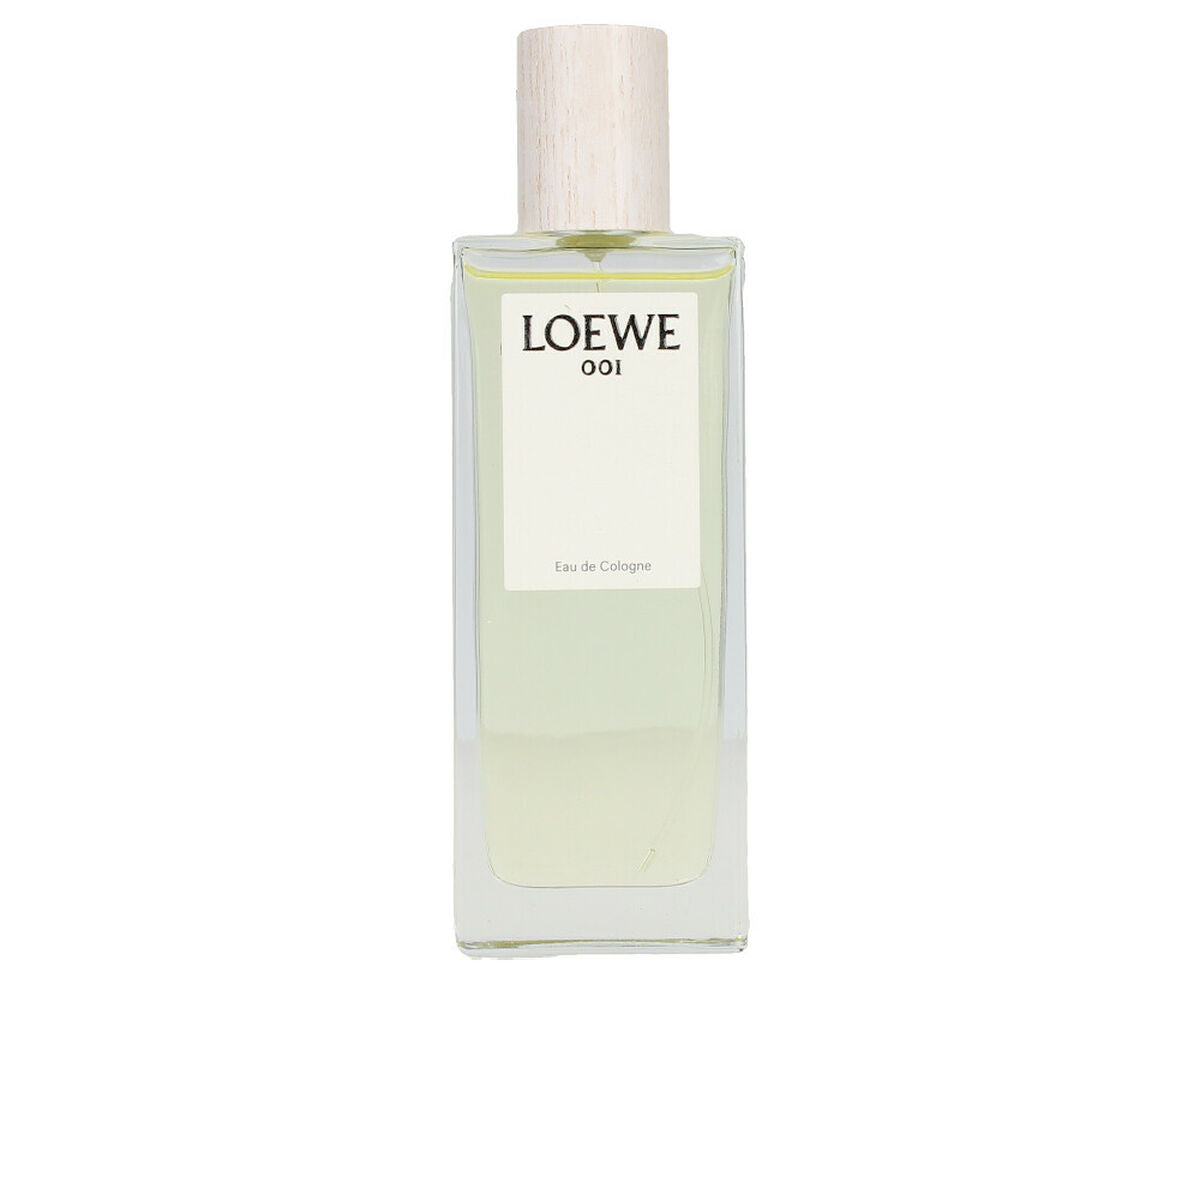 Perfume unisexe Loewe 001 EDC 50 ml 100 ml